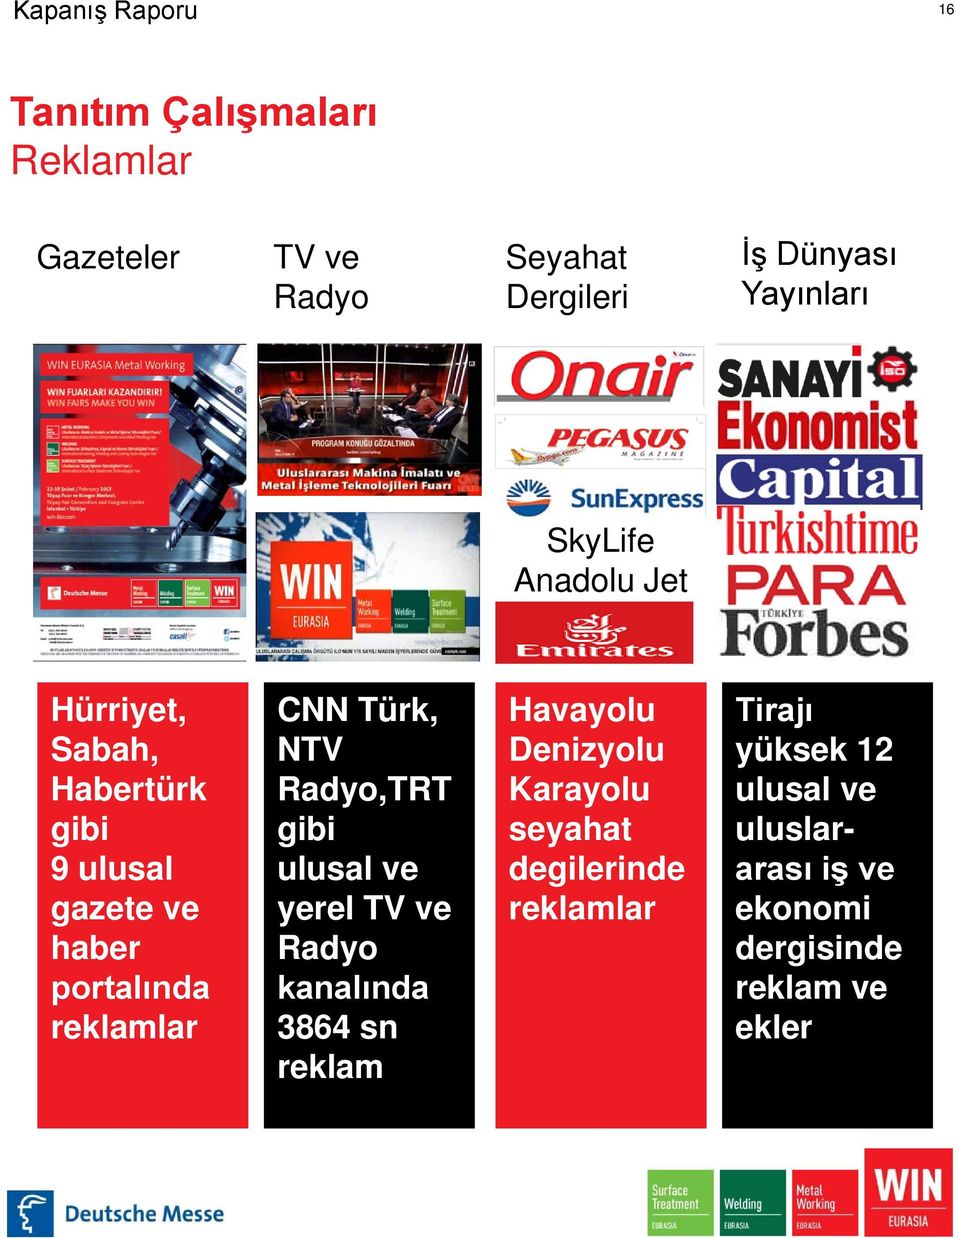 NTV Radyo,TRT gibi ulusal ve yerel TV ve Radyo kanalında 3864 sn reklam Havayolu Denizyolu Karayolu